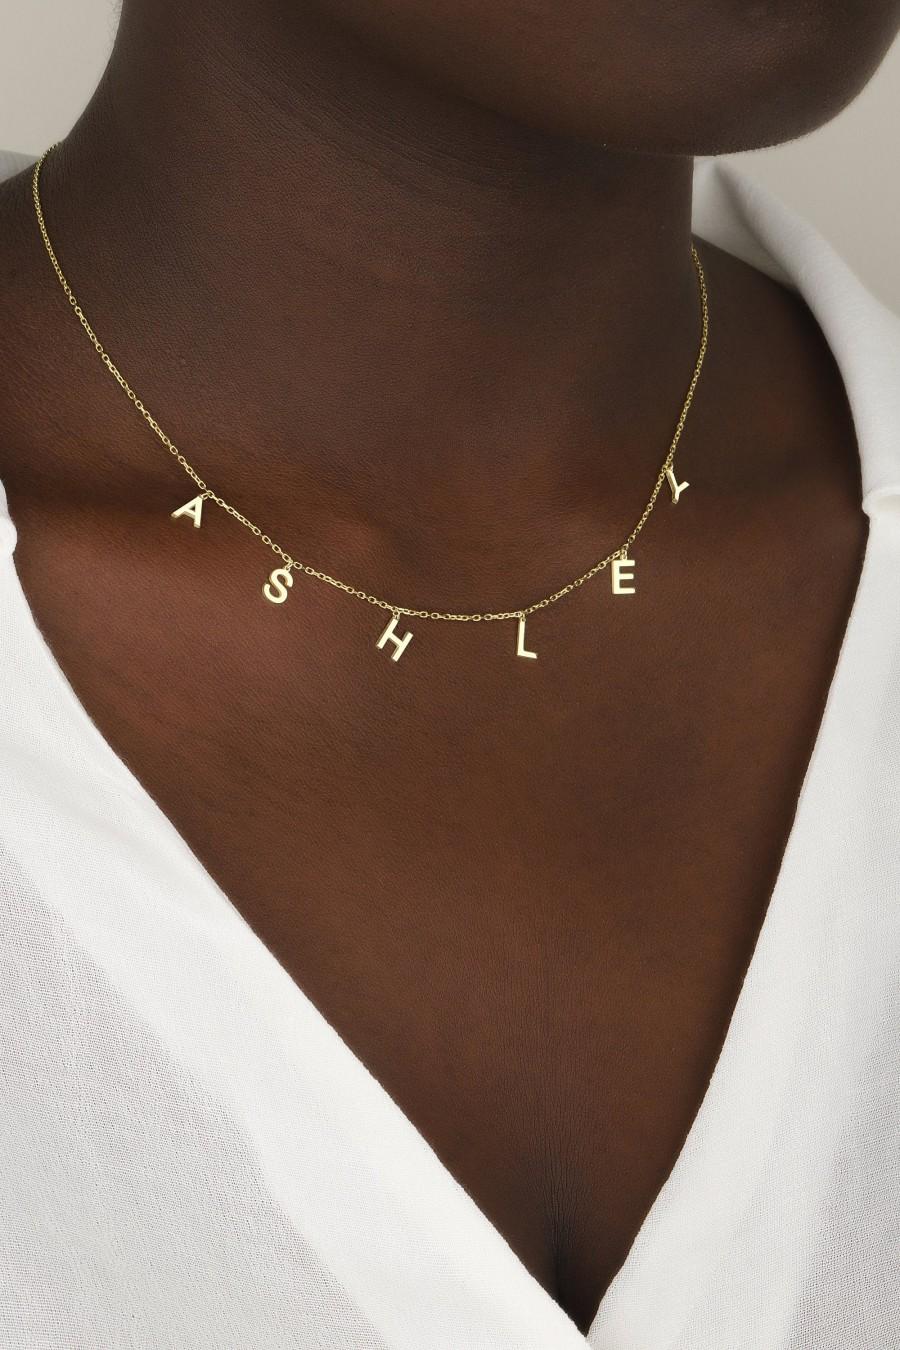 زفاف - Gold Name Necklace , Name Necklace , Drop initial necklace , Gold necklace , initial necklace , Mothers day gift , Personalized Jewelry